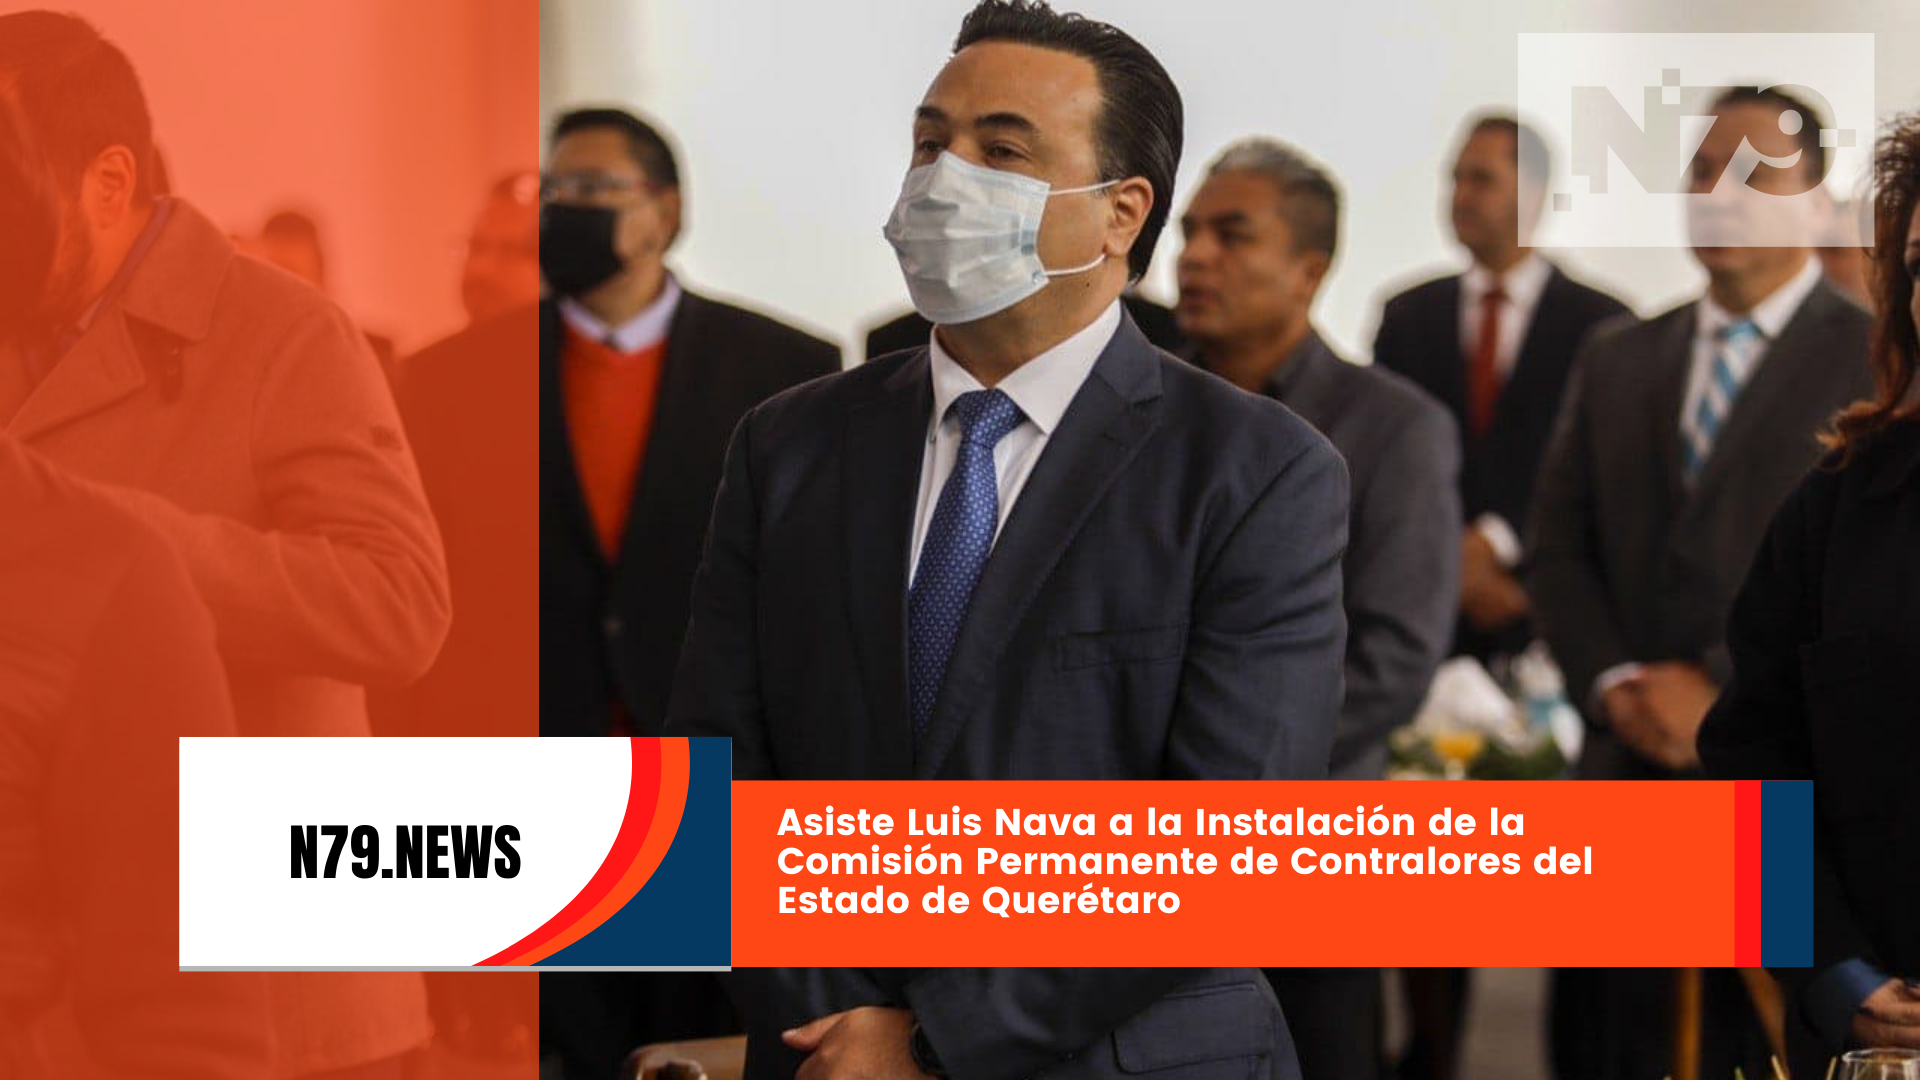 Asiste Luis Nava a la Instalación de la Comisión Permanente de Contralores del Estado de Querétaro